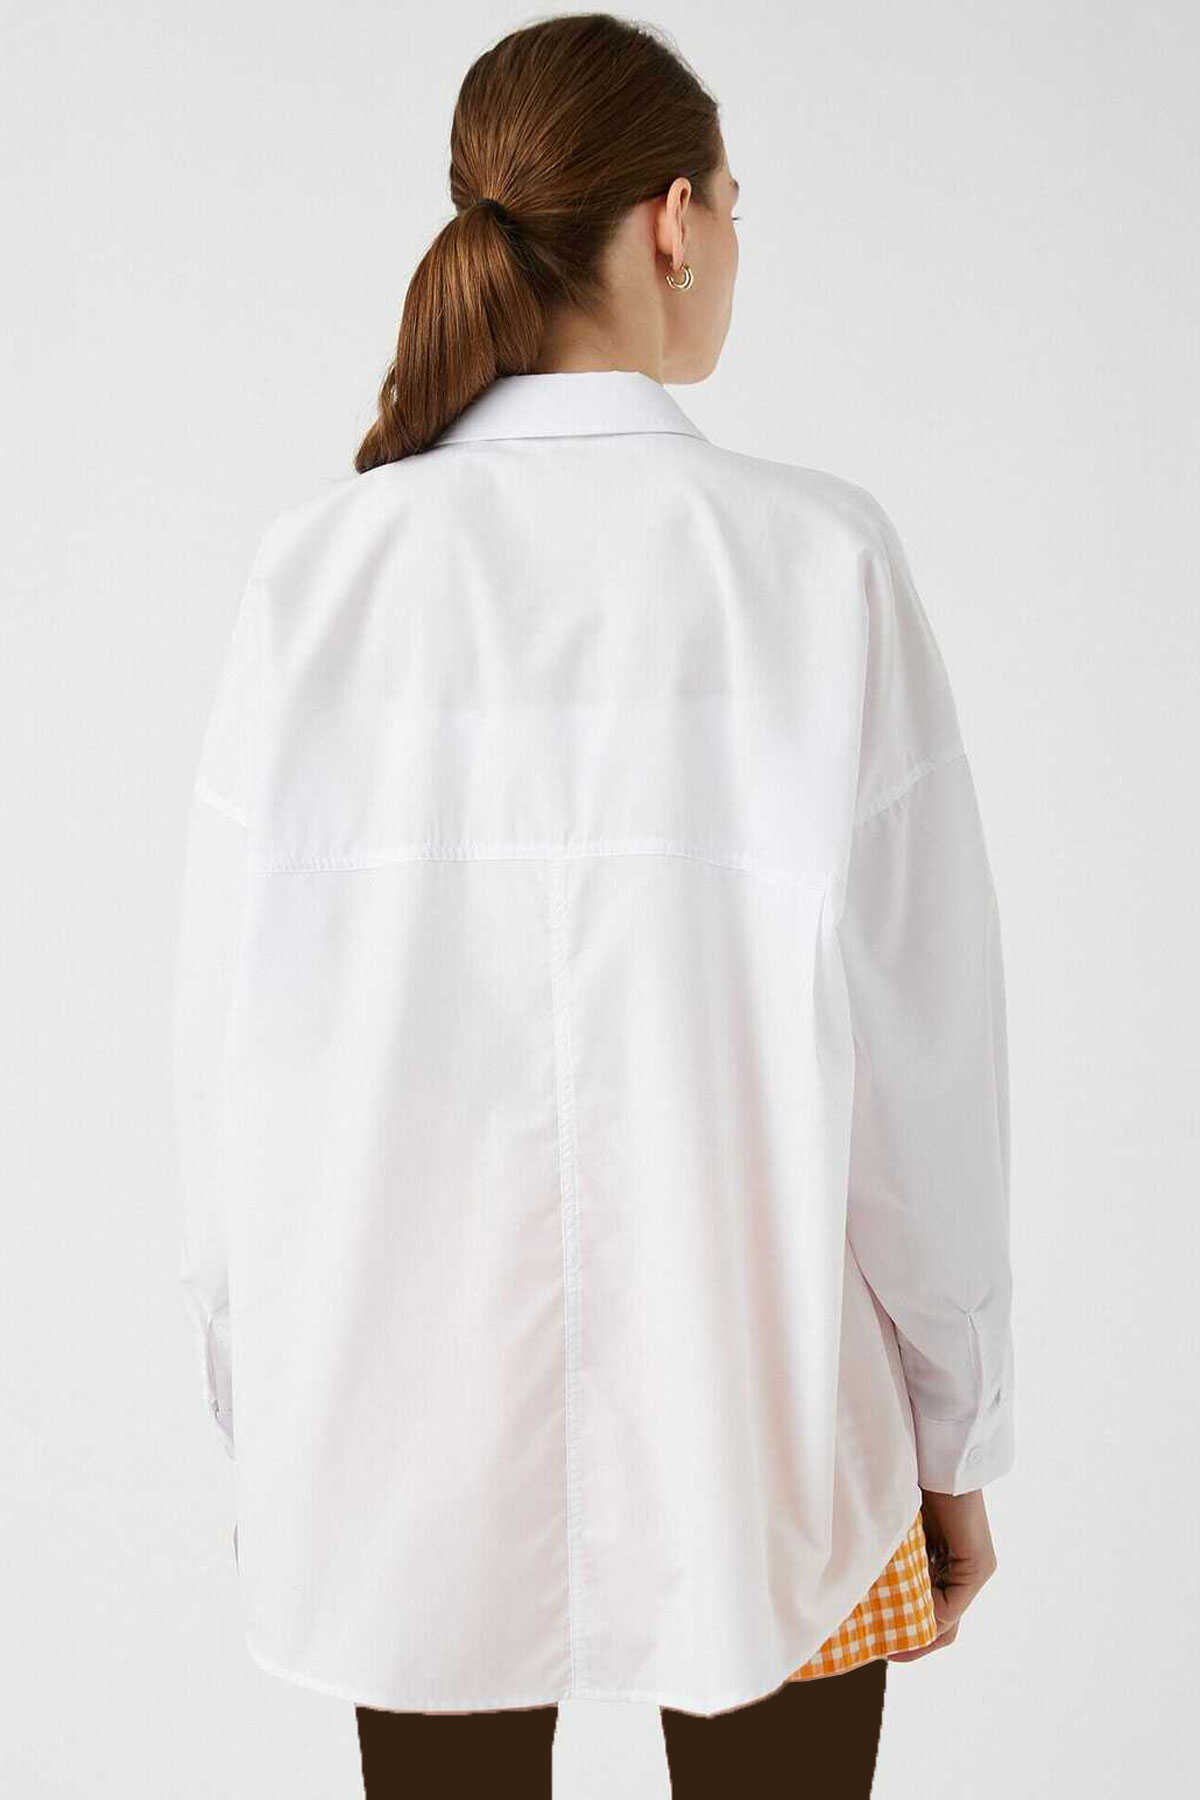 پیراهن آستین بلند یقه کلاسیک دکمه دار اور سایز زنانه سفید برند Koton 